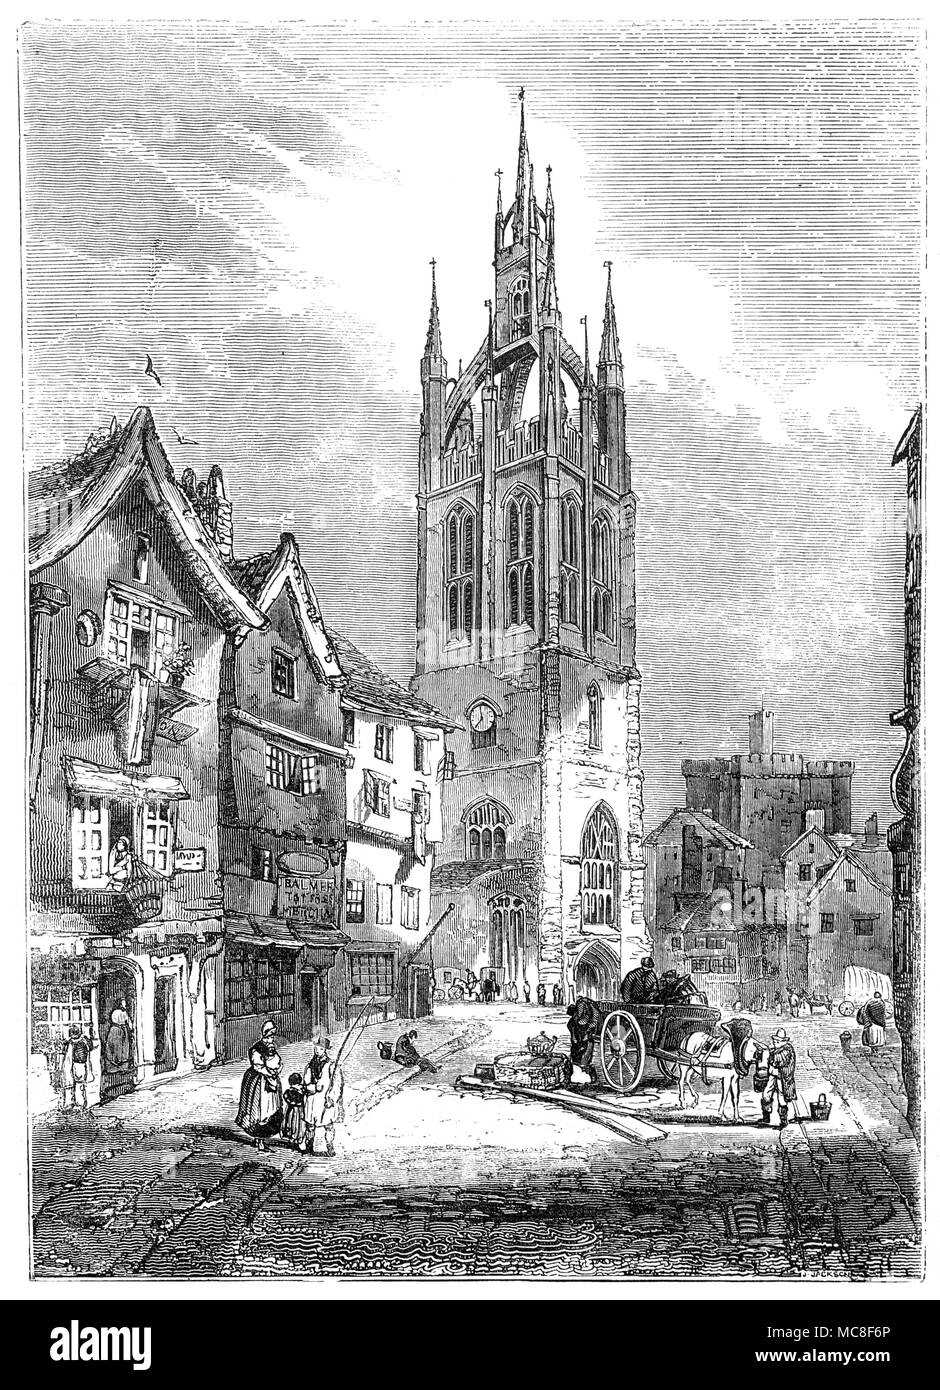 Gesehen von St Nicholas Street, die Kathedrale Kirche des Hl. Nikolaus ist in Newcastle upon Tyne, England. 1091 während der gleichen Periode wie die nahe gelegene Burg gegründet, die normannische Kirche wurde im Jahr 1216 durch einen Brand zerstört und das heutige Gebäude wurde 1350 abgeschlossen, so ist meist der Senkrecht Stil des 14. Jahrhunderts. Der Turm ist für das 15. Jahrhundert Laterne Spire festgestellt. Stark im Jahr 1777 wiederhergestellt, wurde der Bau der Kathedrale Status im Jahr 1882, als es als Kathedrale Kirche des Hl. Nikolaus bekannt. Stockfoto